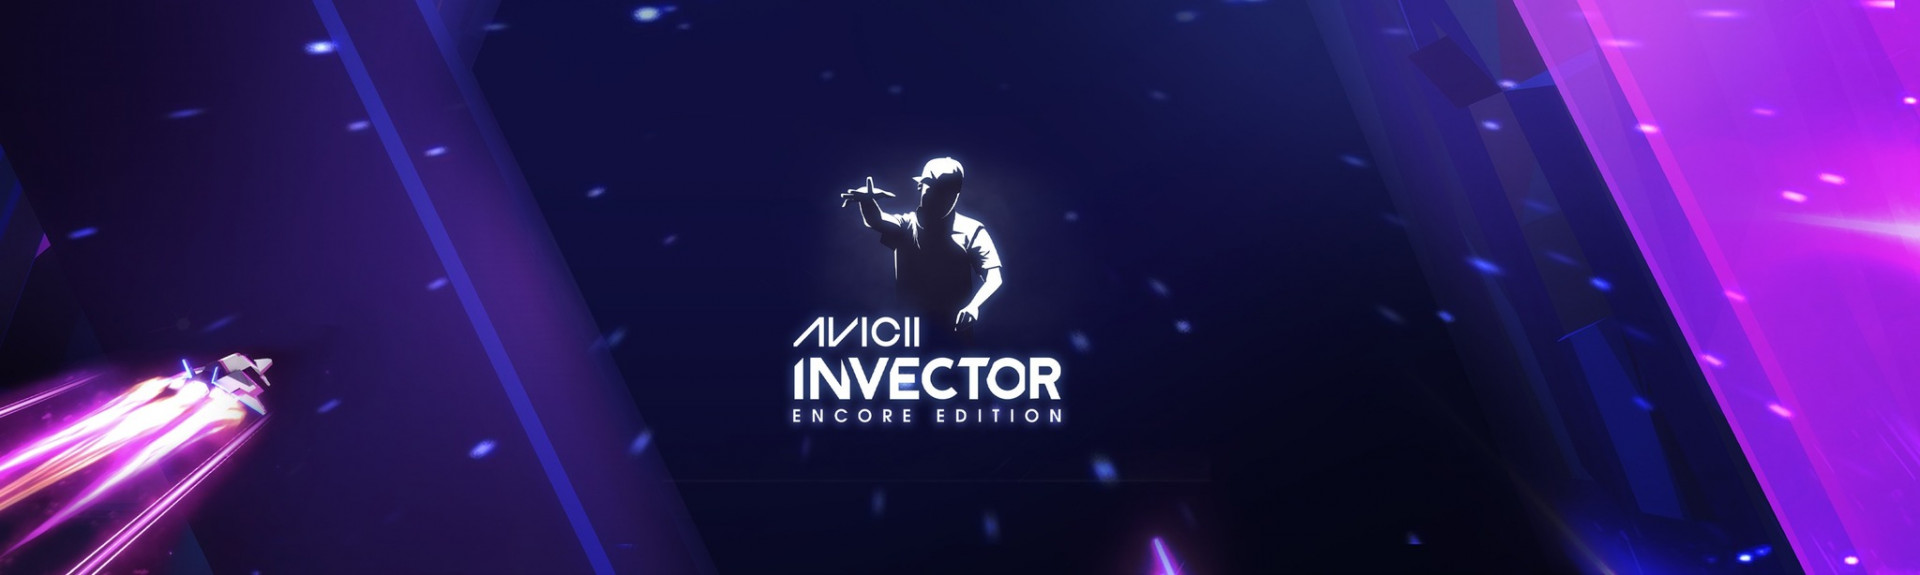 AVICII Invector: Encore Edition - ANÁLISIS